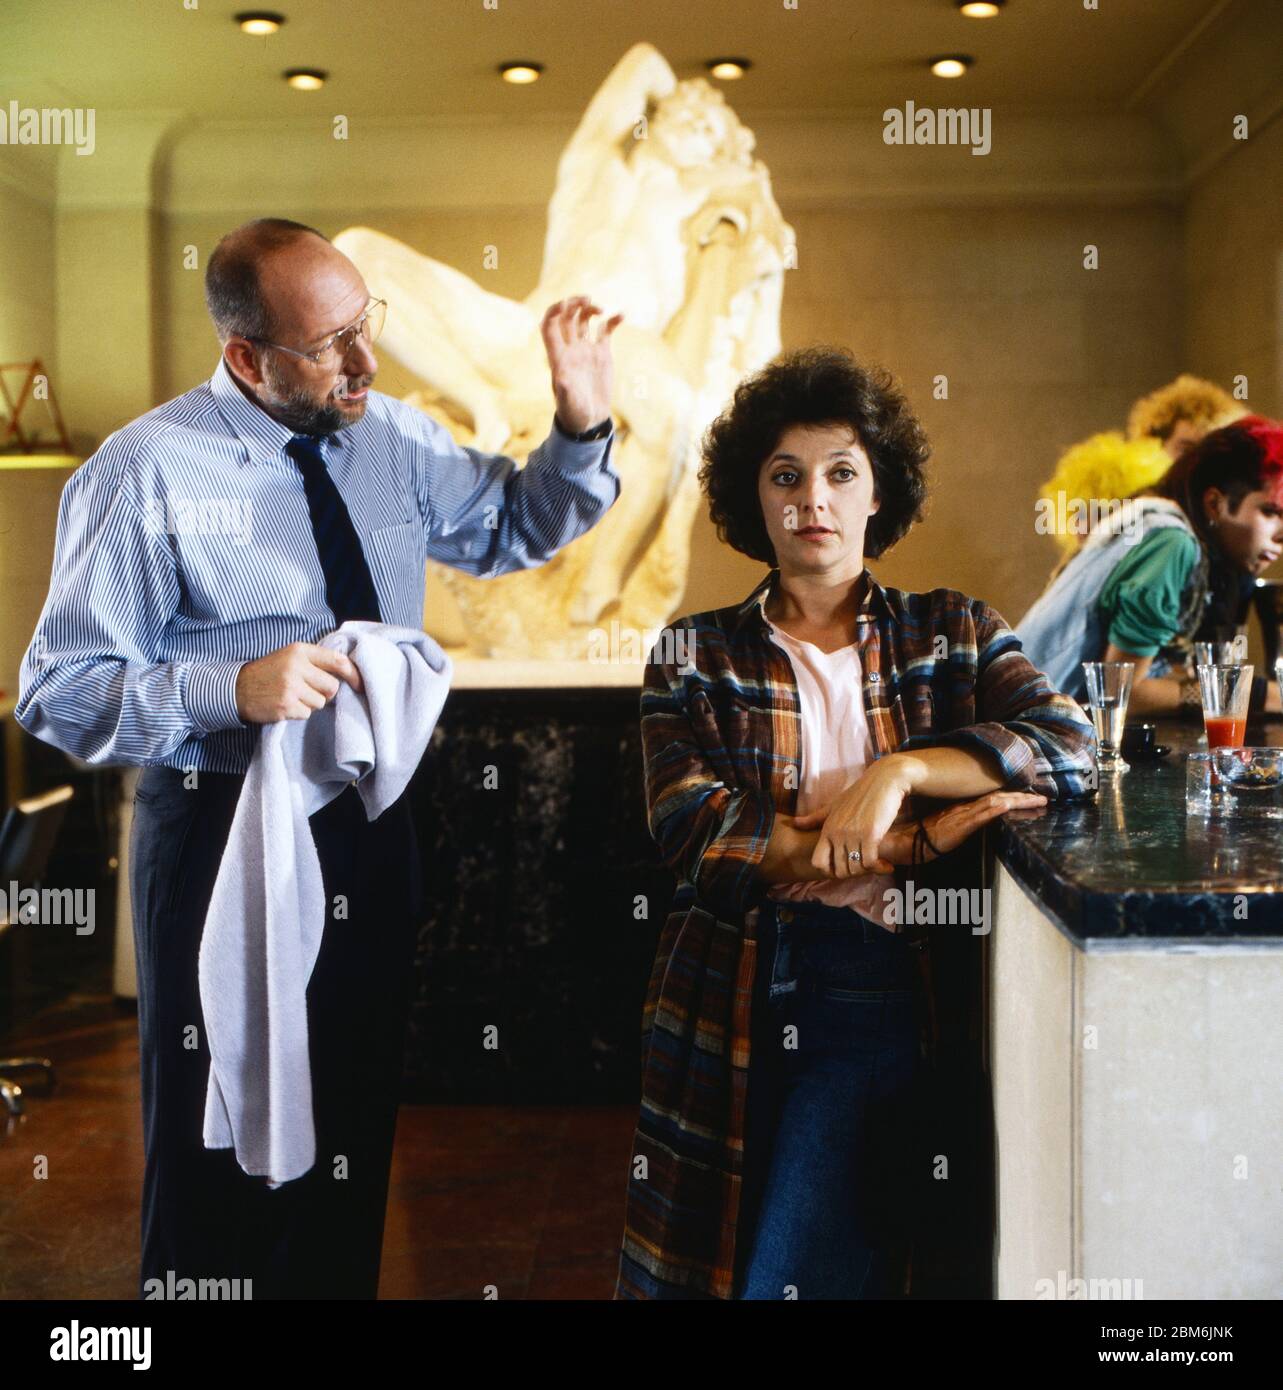 Der Millionenbauer, Fernsehserie, Deutschland 1979 - 1988, Episode: Schöne Aussichten, Darsteller: Klaus Guth, Monika Baumgartner Stock Photo